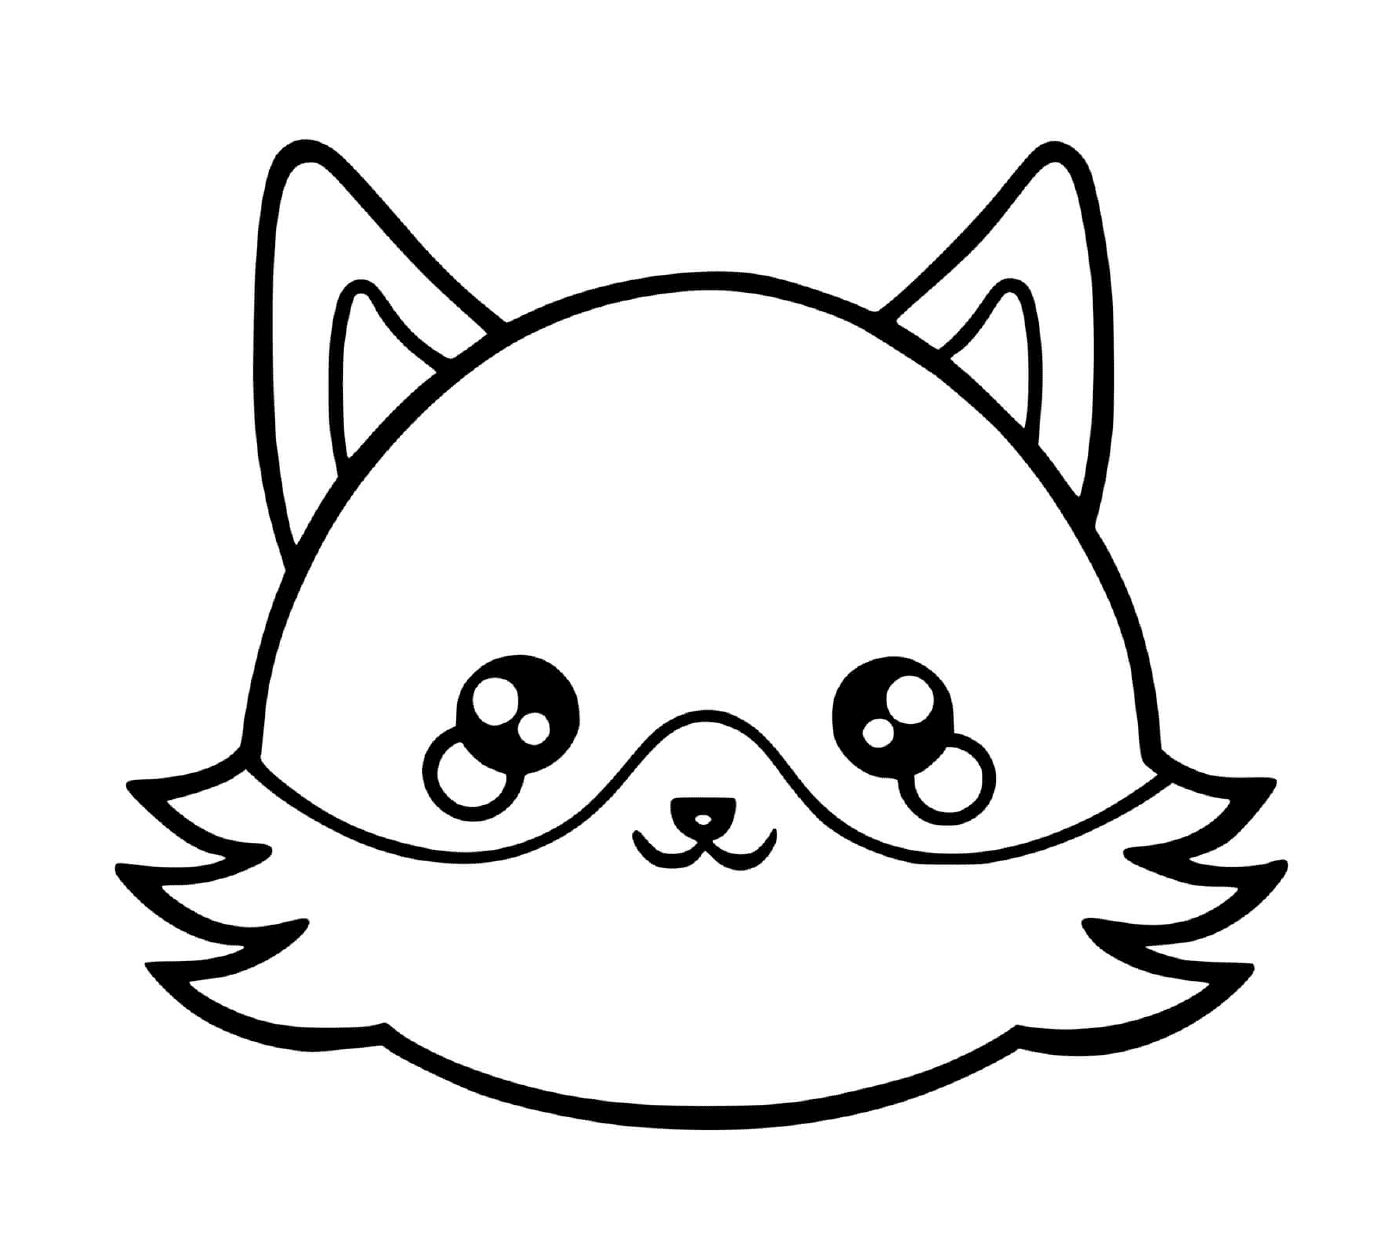   Un renard avec un visage de chat dessiné dessus 